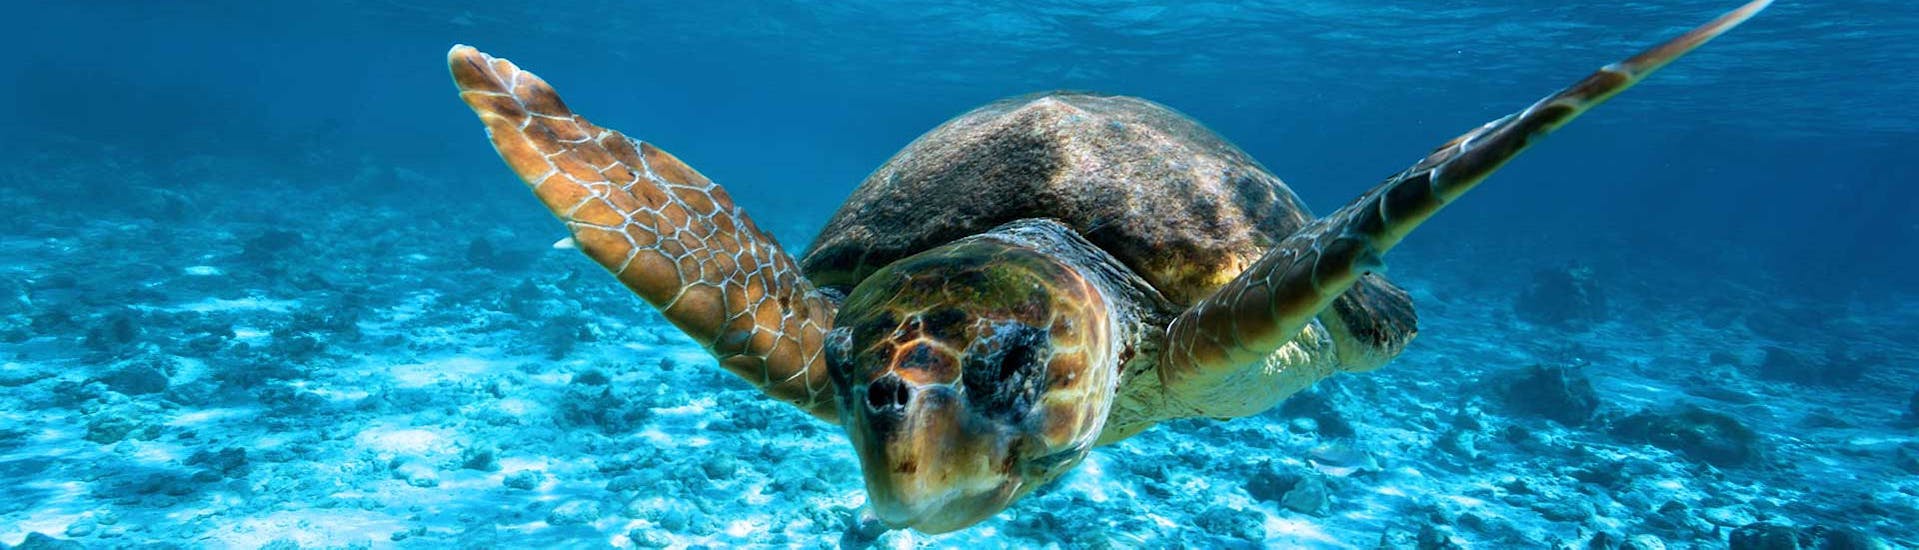 In het water zwemt een schildpad, die te zien is met de taxiboot naar het schildpaddeneiland Agios Sostis.